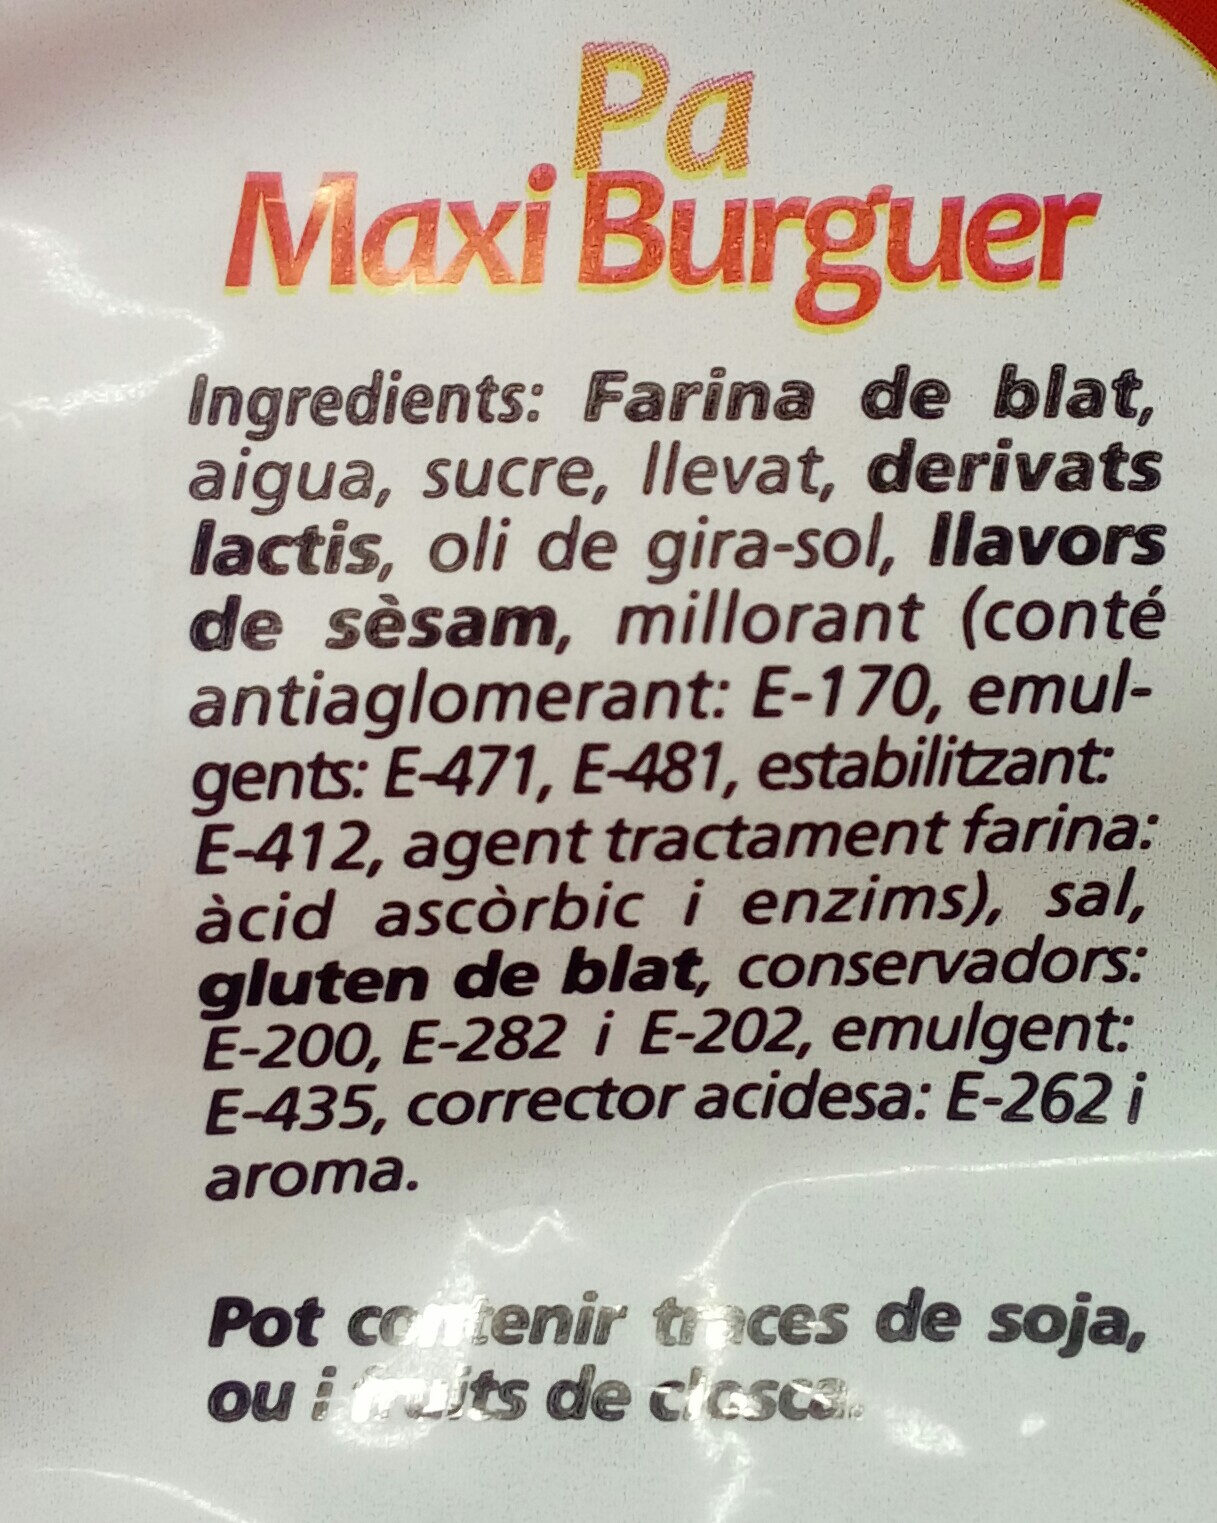 Pan Maxi Burguer - Ingredients